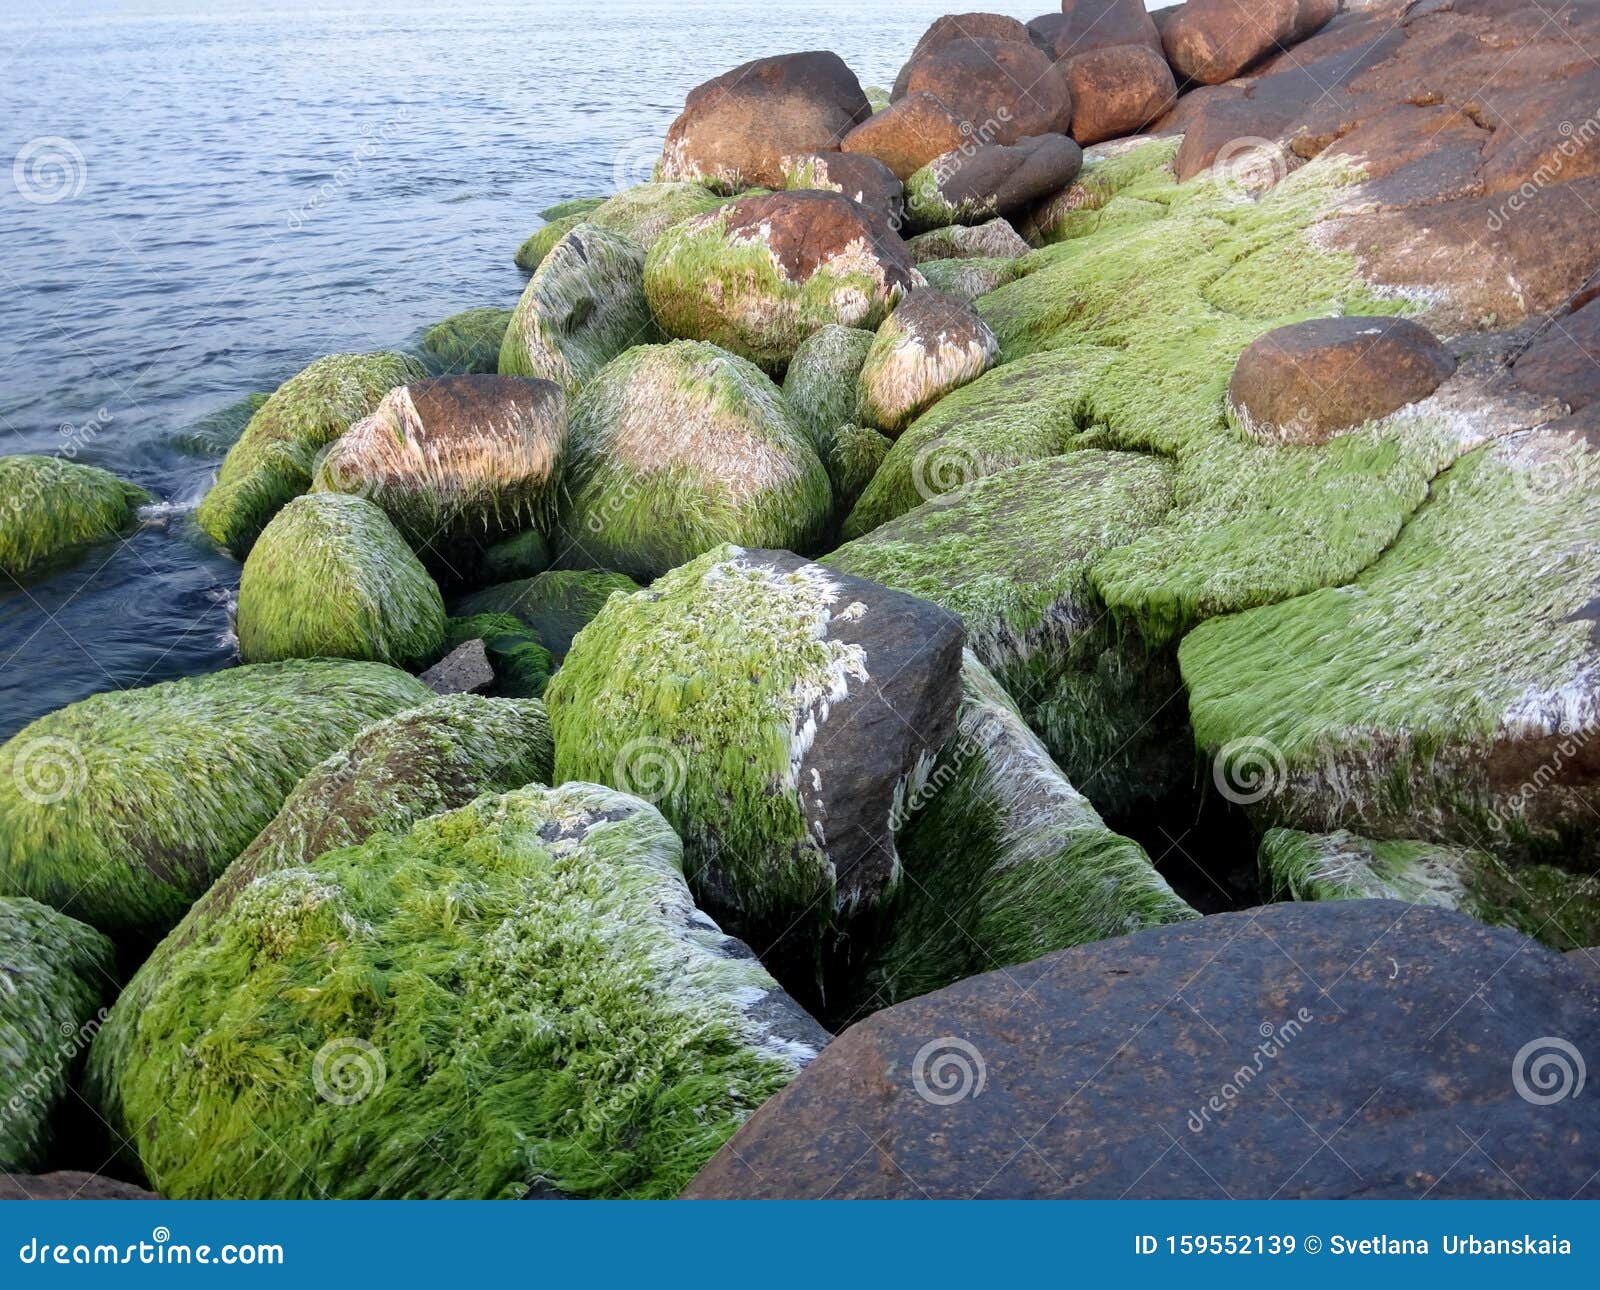 https://thumbs.dreamstime.com/z/piedras-recubiertas-de-algas-en-el-mar-cerca-del-musgo-marino-verde-grandes-159552139.jpg